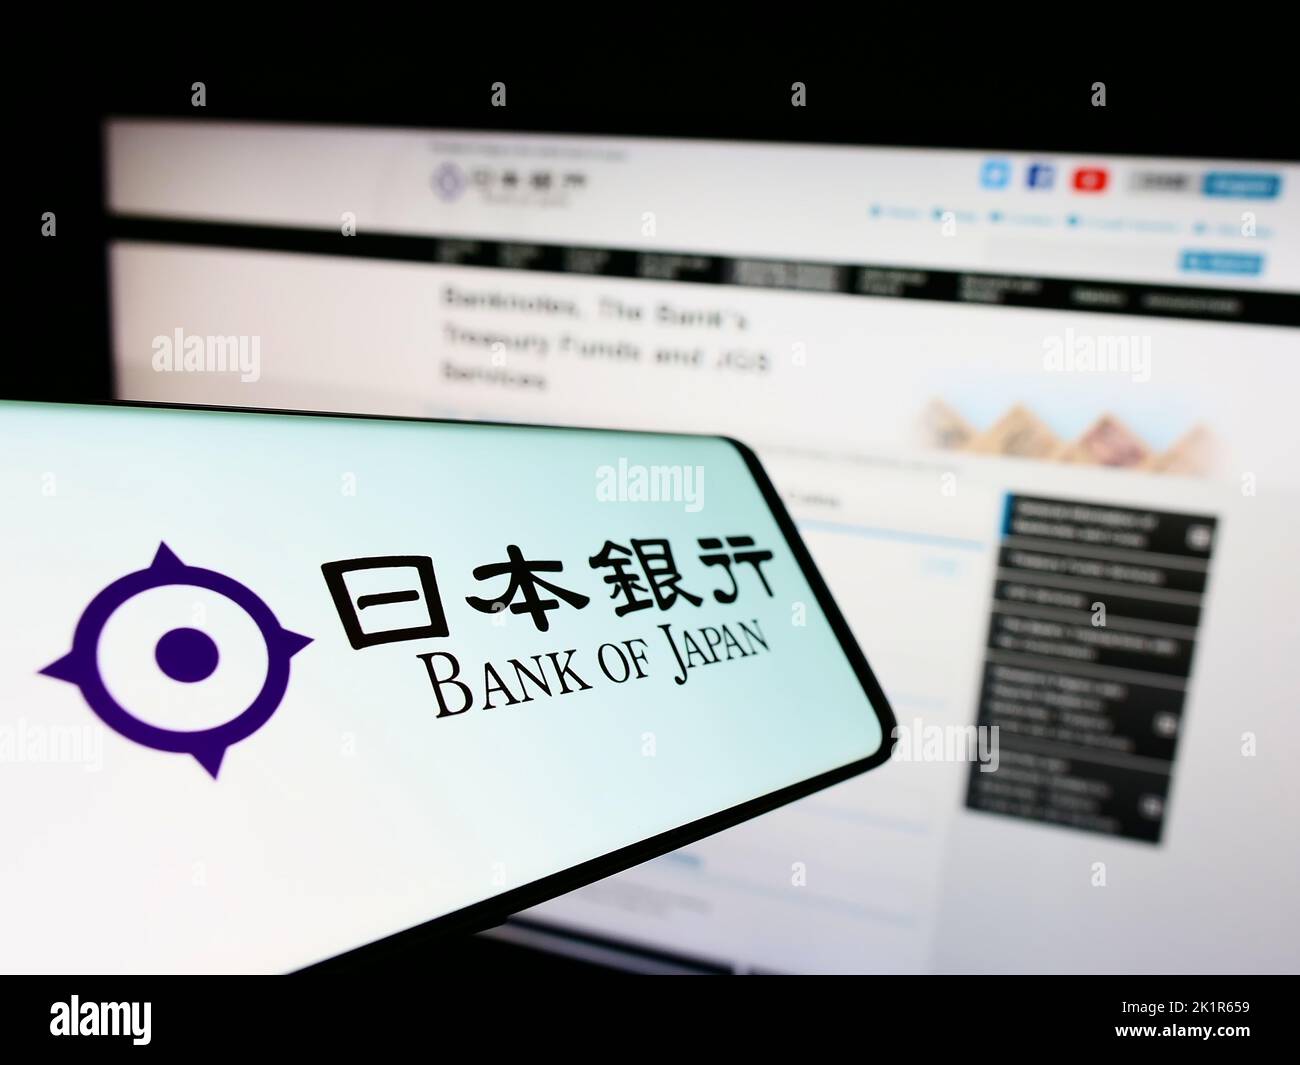 Cellulare con logo dell'istituto finanziario Banca del Giappone (BOJ) sullo schermo di fronte al sito web. Messa a fuoco al centro a sinistra del display del telefono. Foto Stock